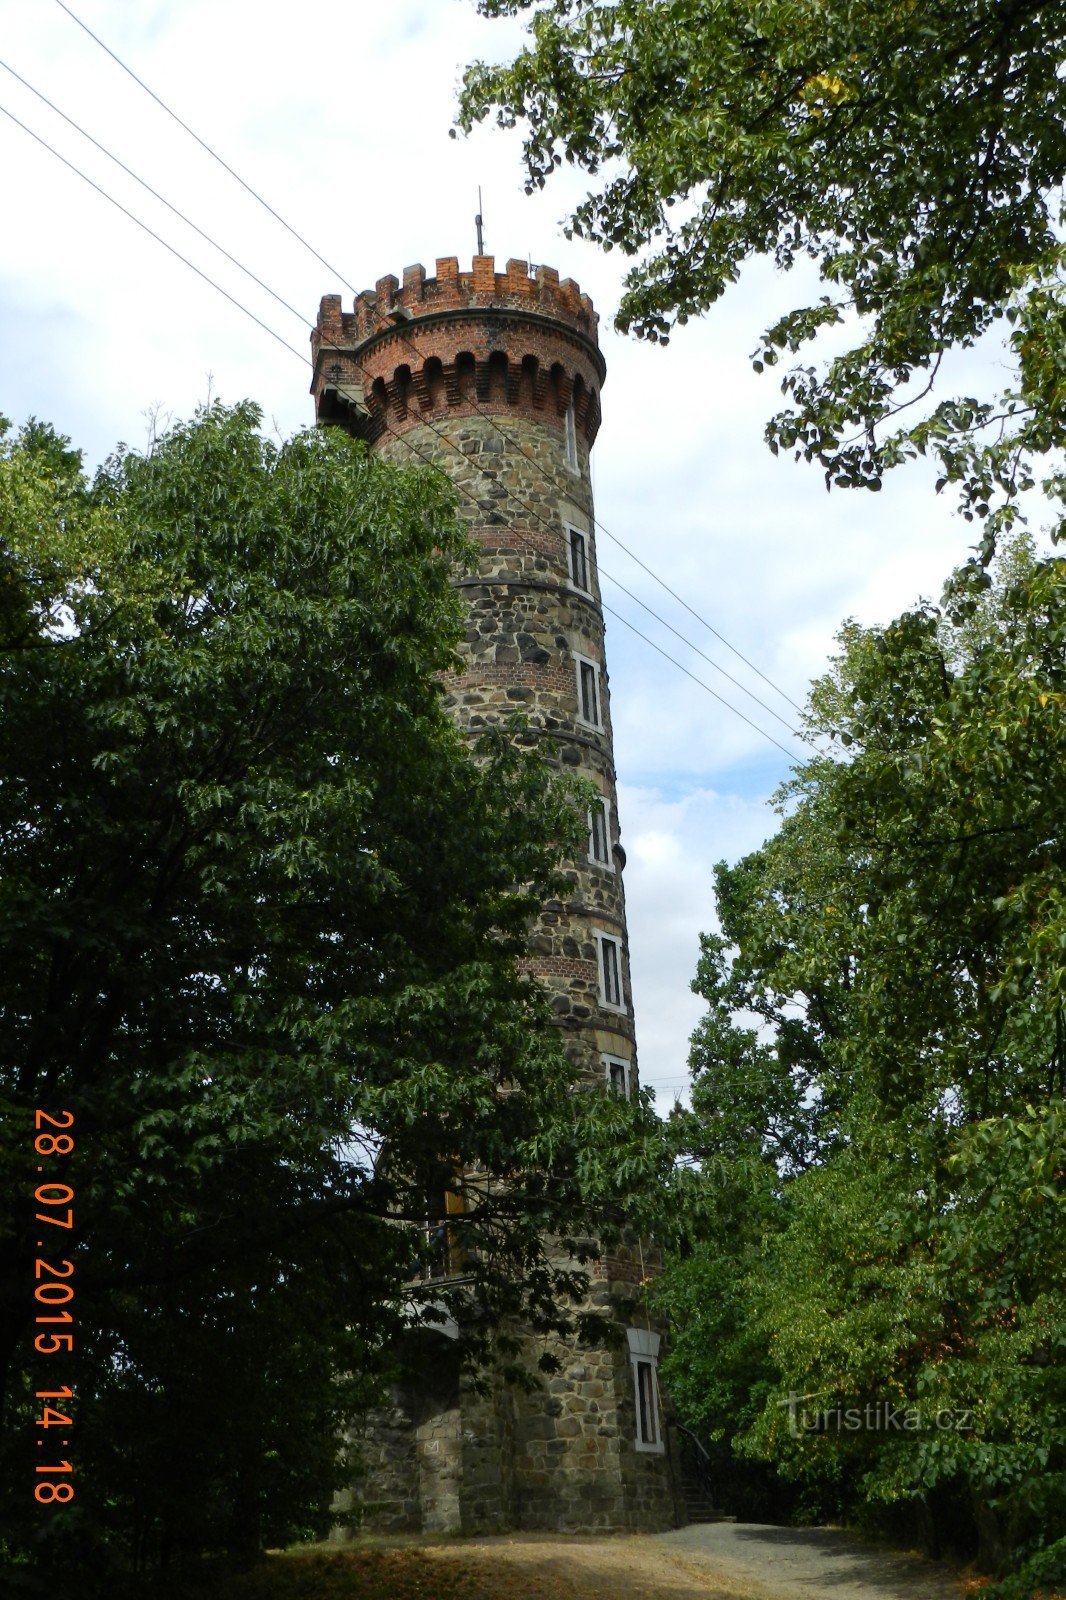 Cvilín - torre di avvistamento nei dettagli dall'esterno, dall'interno e dai panorami